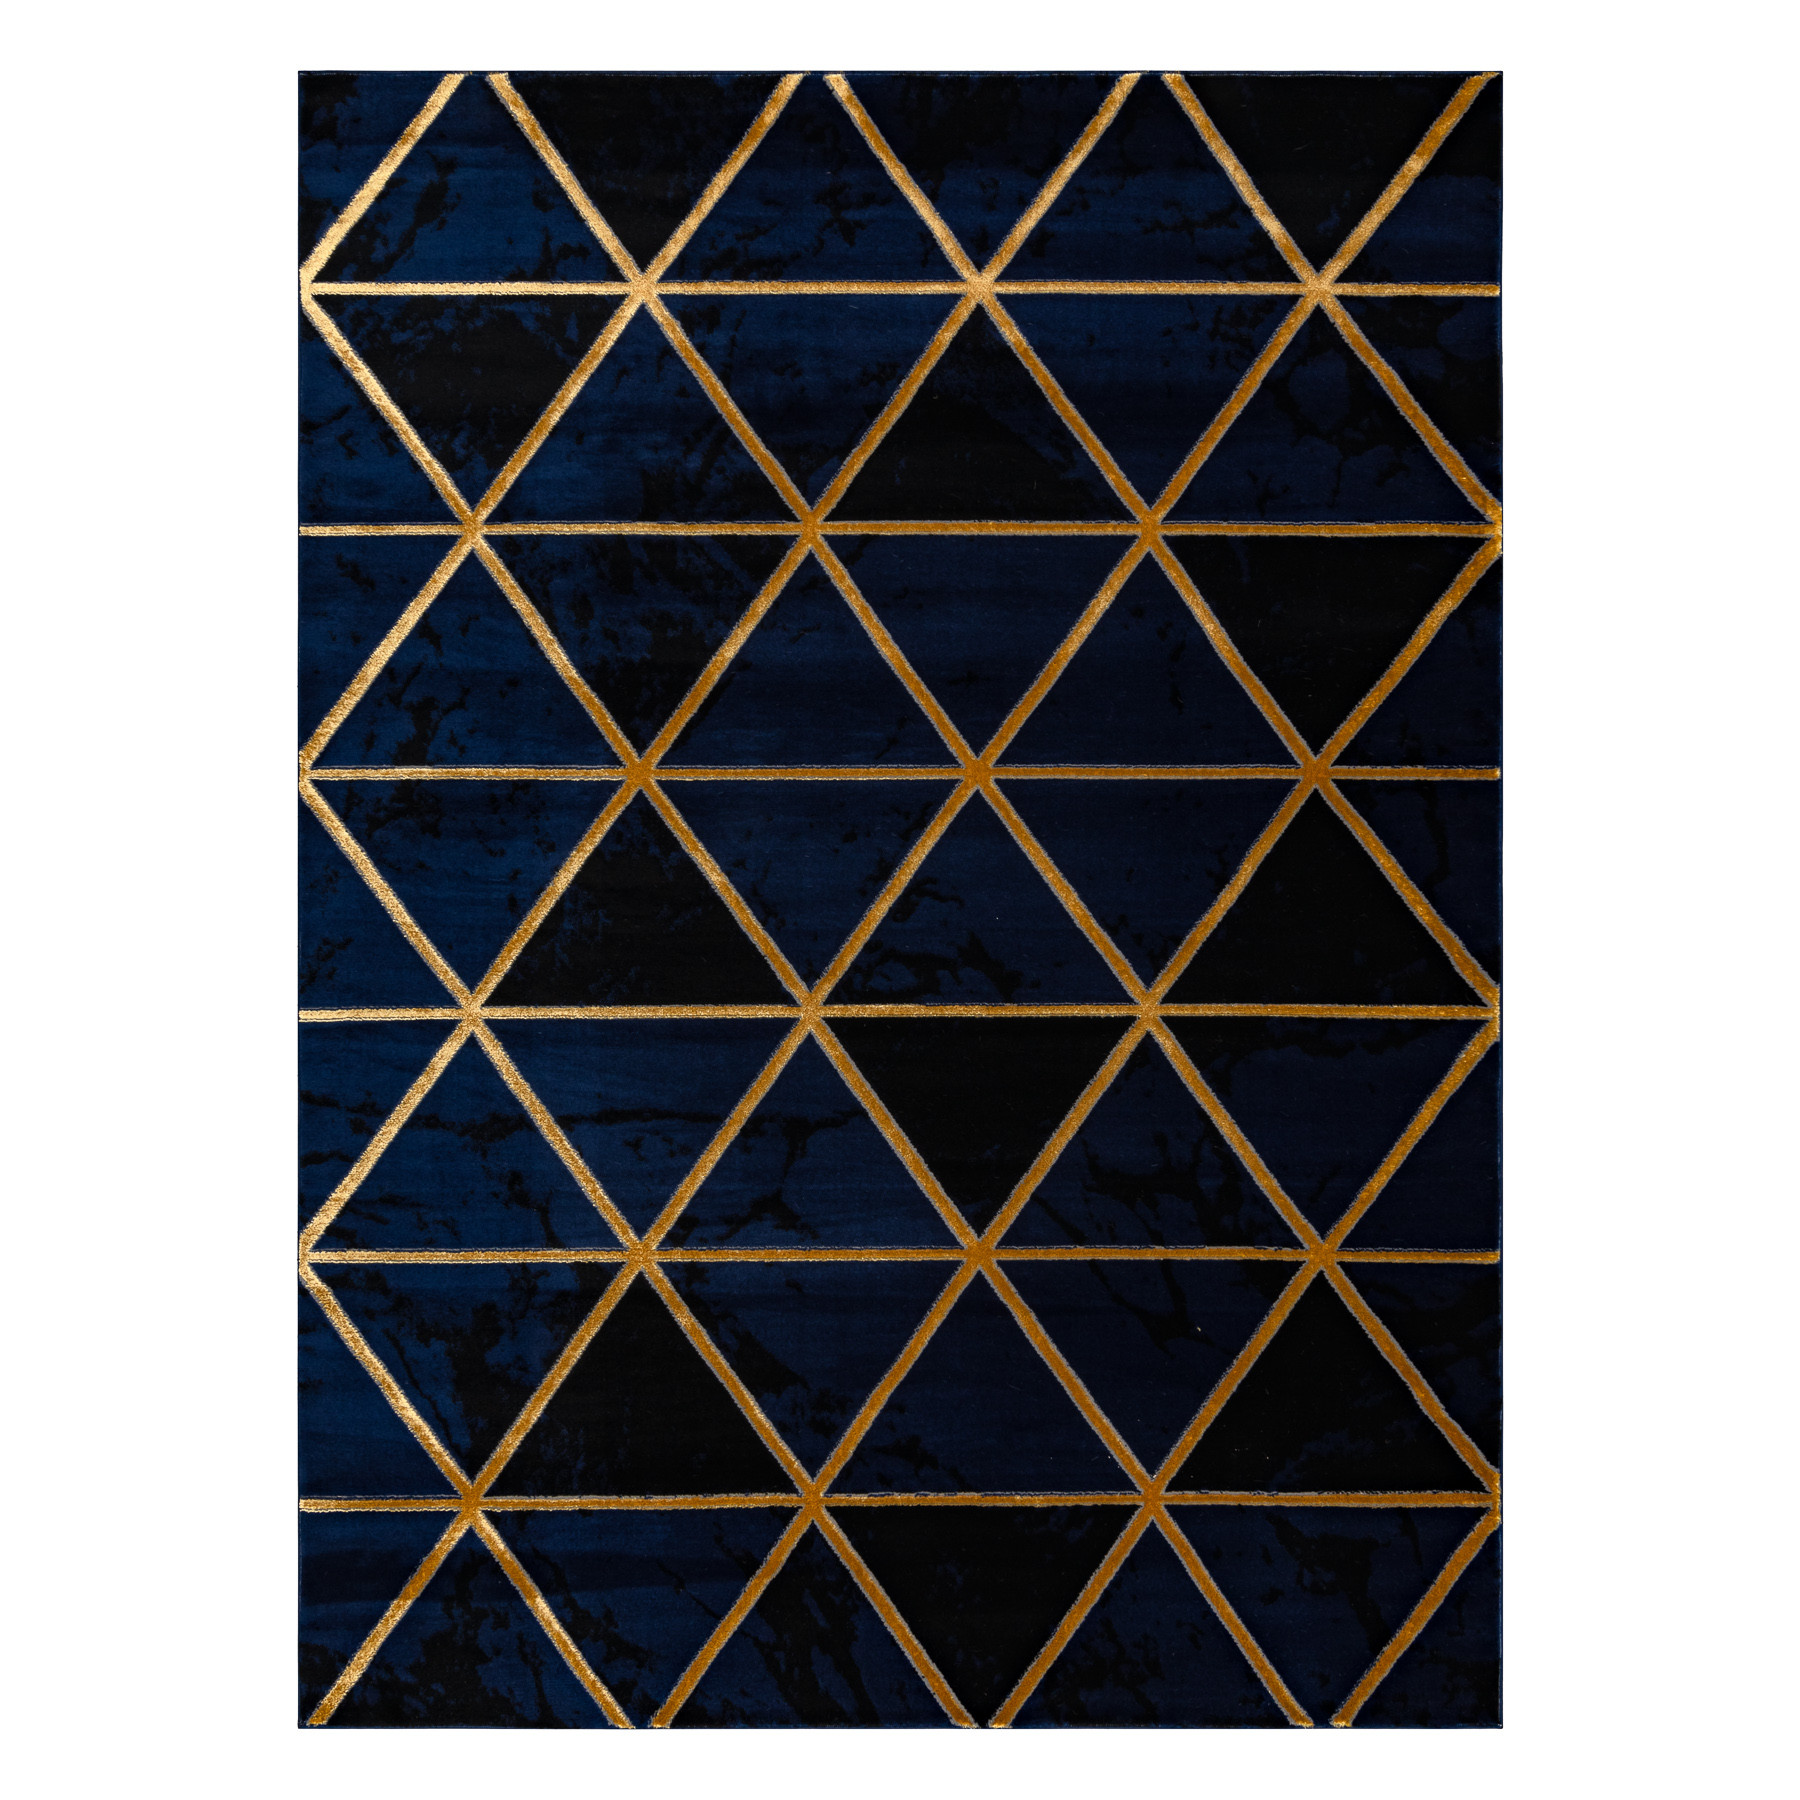 Koberec EMERALD exkluzívny 1020 glamour, styl marmur, trojuholníky granátový / zlatý